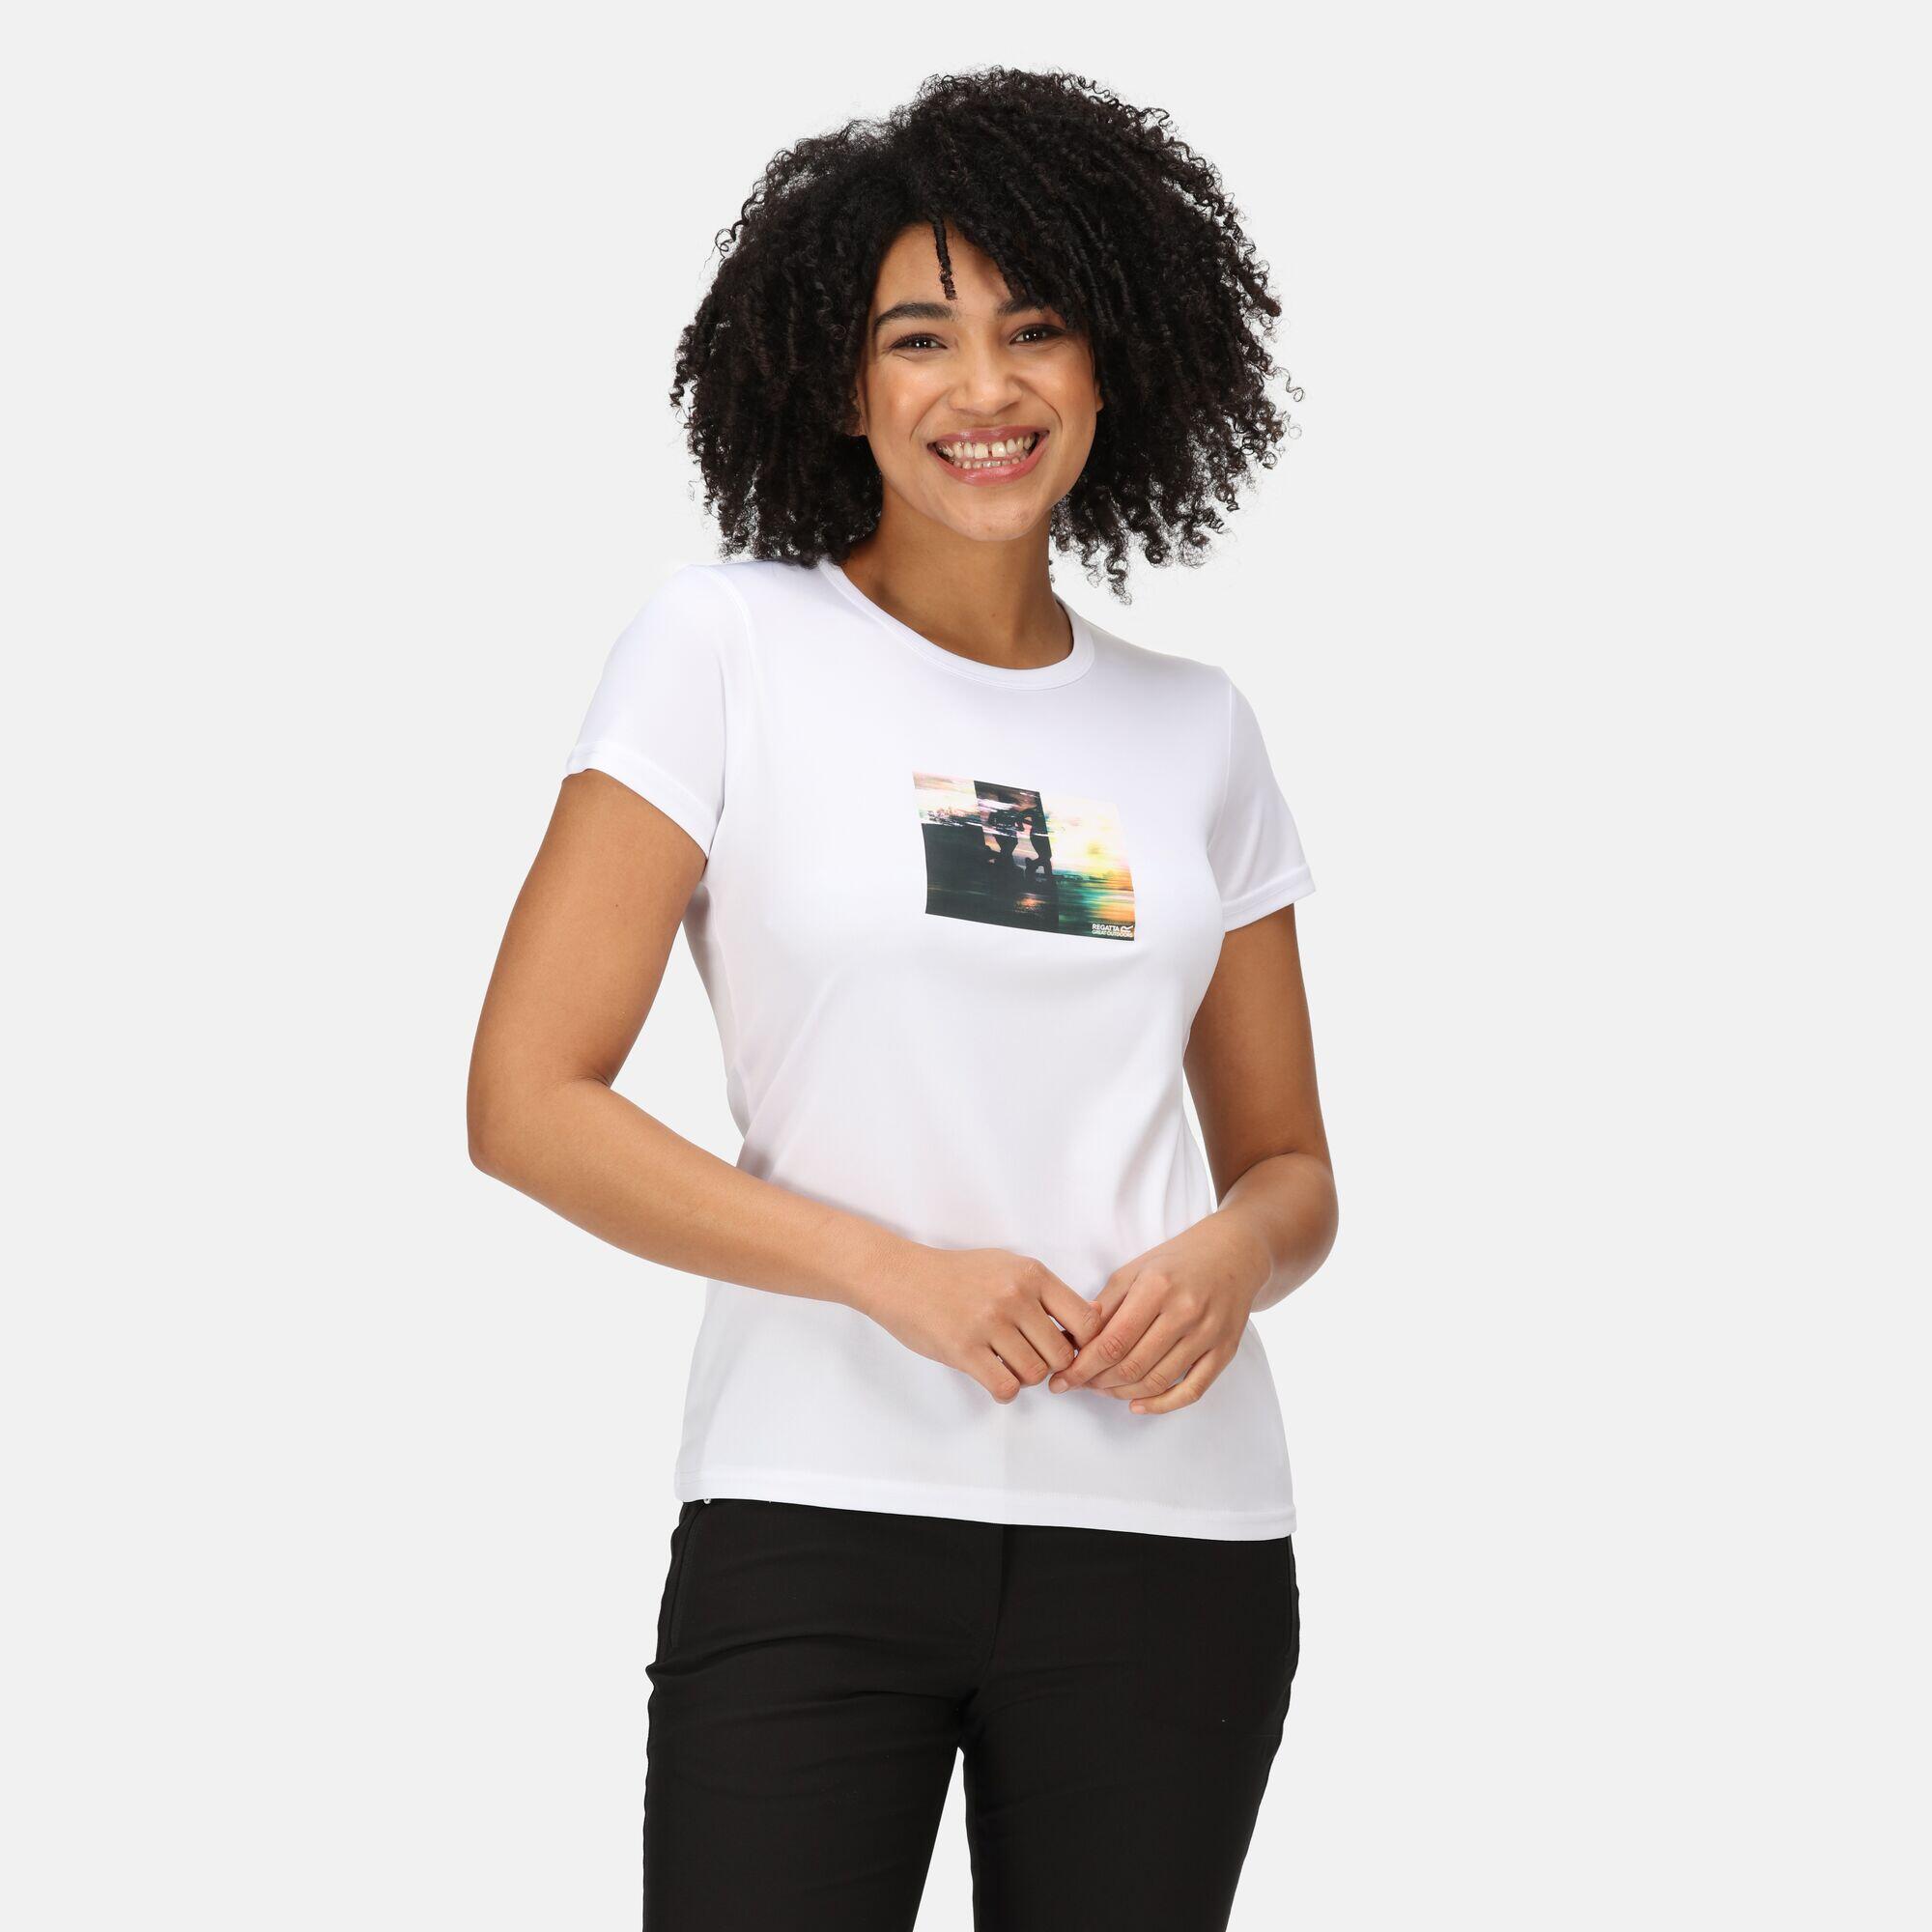 REGATTA Fingal VII Women's Walking Short Sleeve T-Shirt